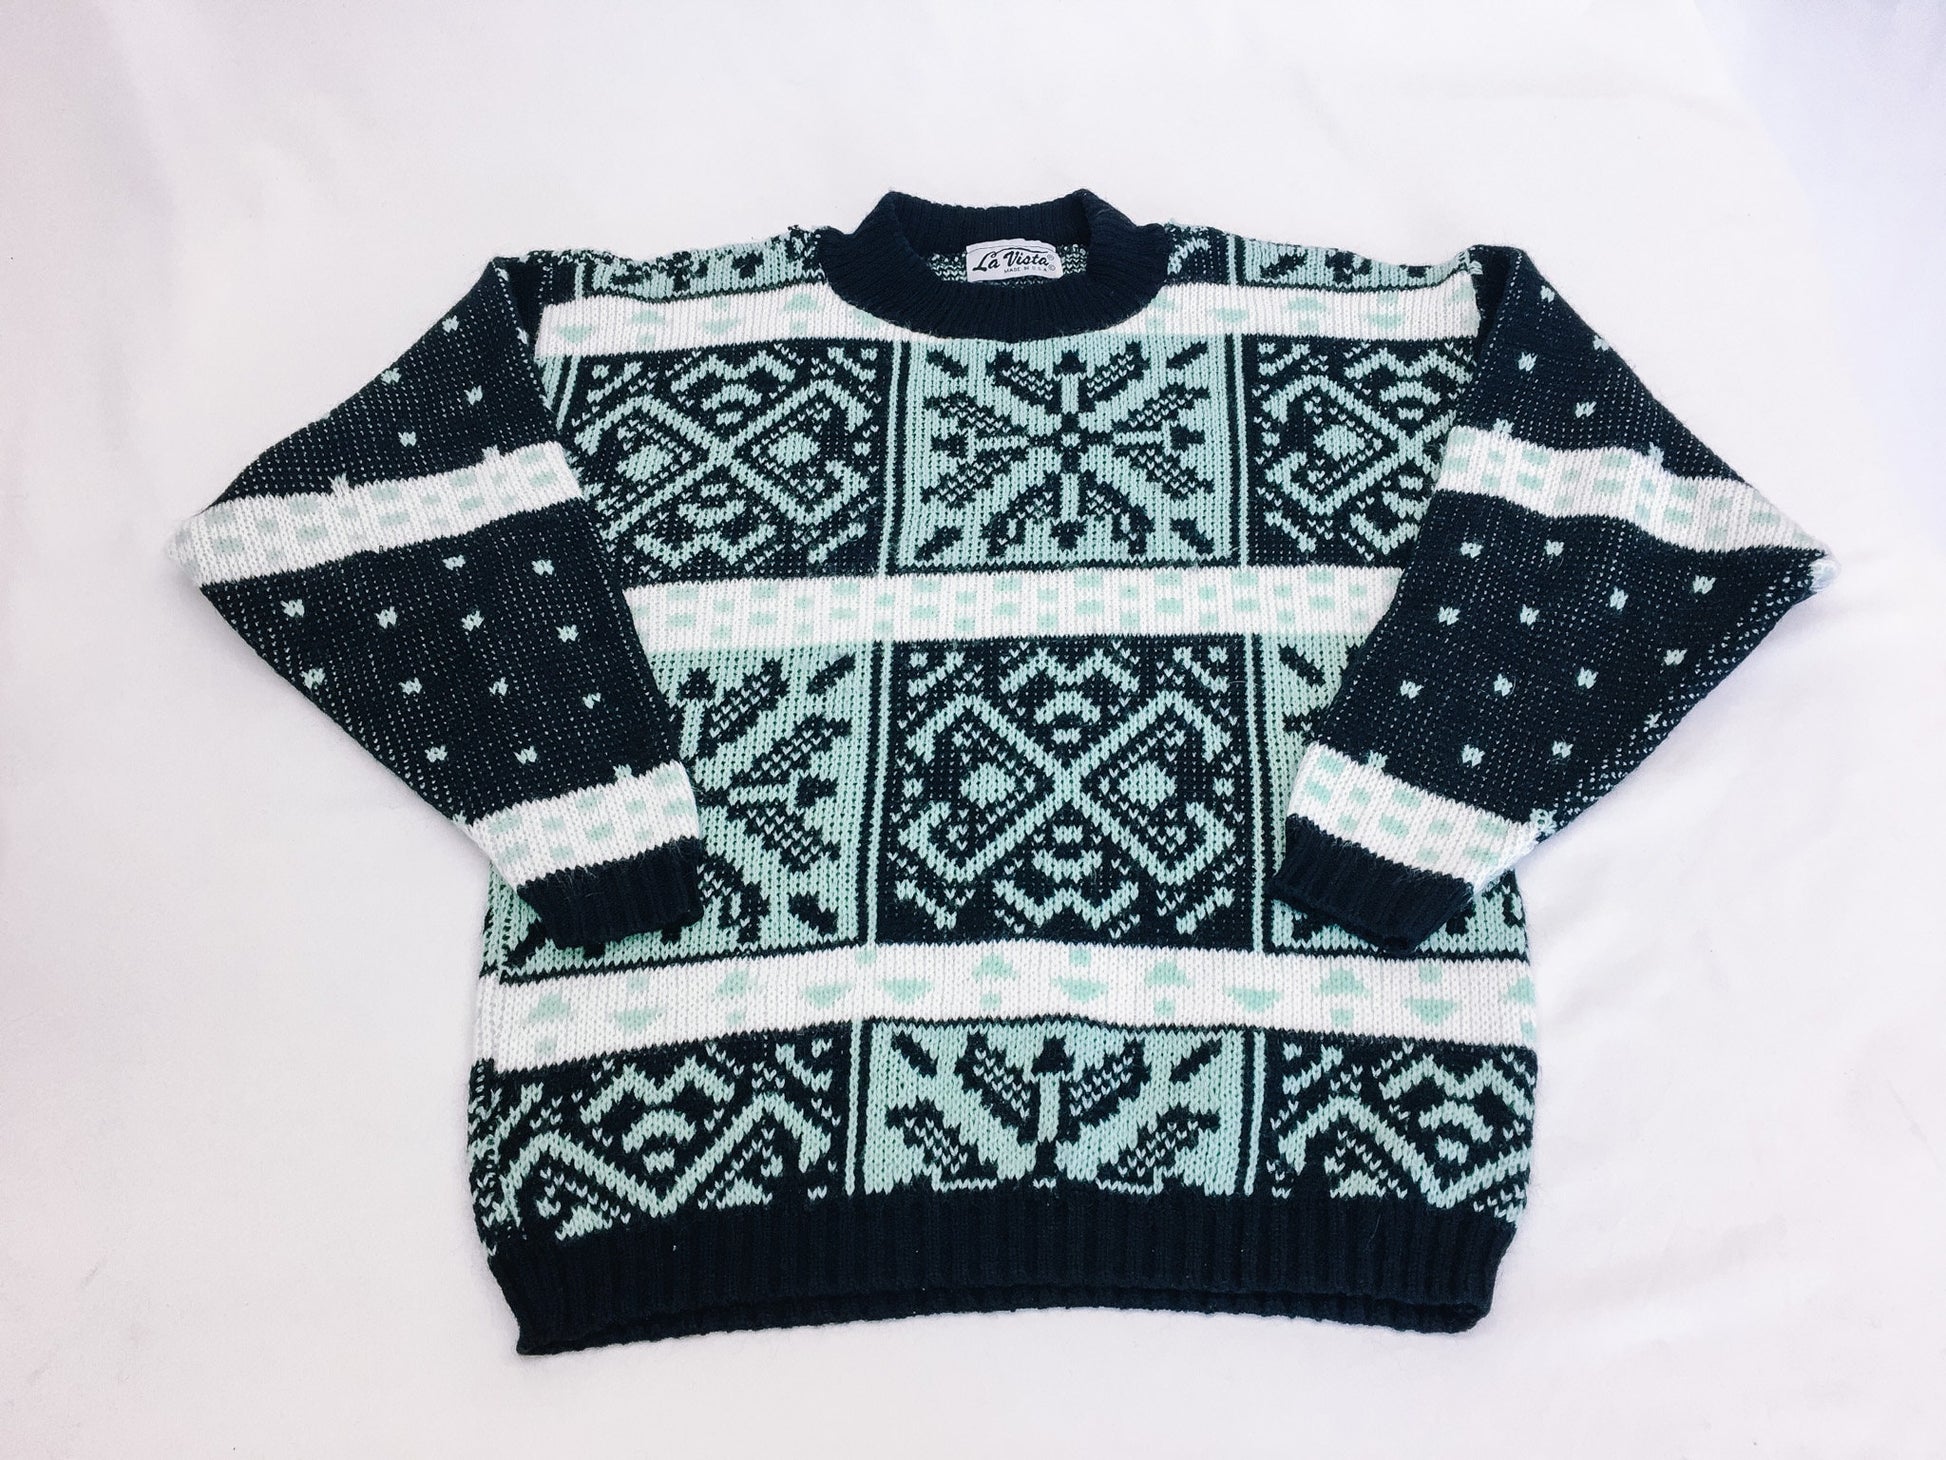 Vintage 80s La Vista Fair Isle Mint and Black Patterned Sweater, Vintage 1980s Crewneck